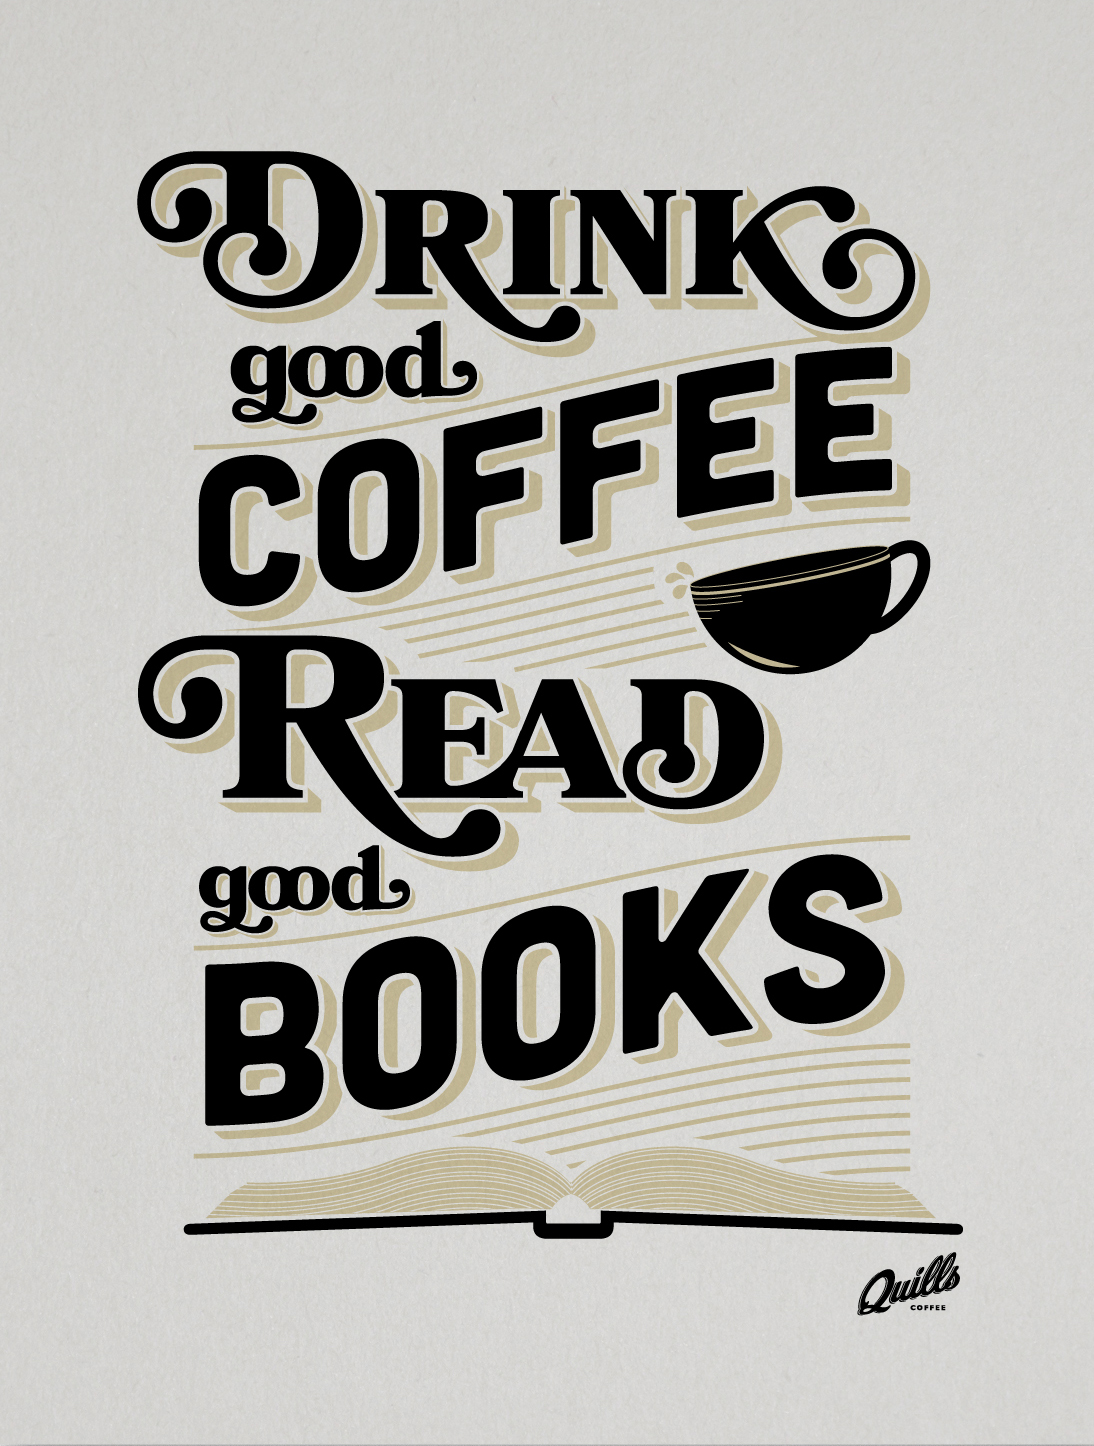 I love книга. Фразы про кофе. Цитаты про кофе. Интересные надписи про кофе. Книга о кофе.